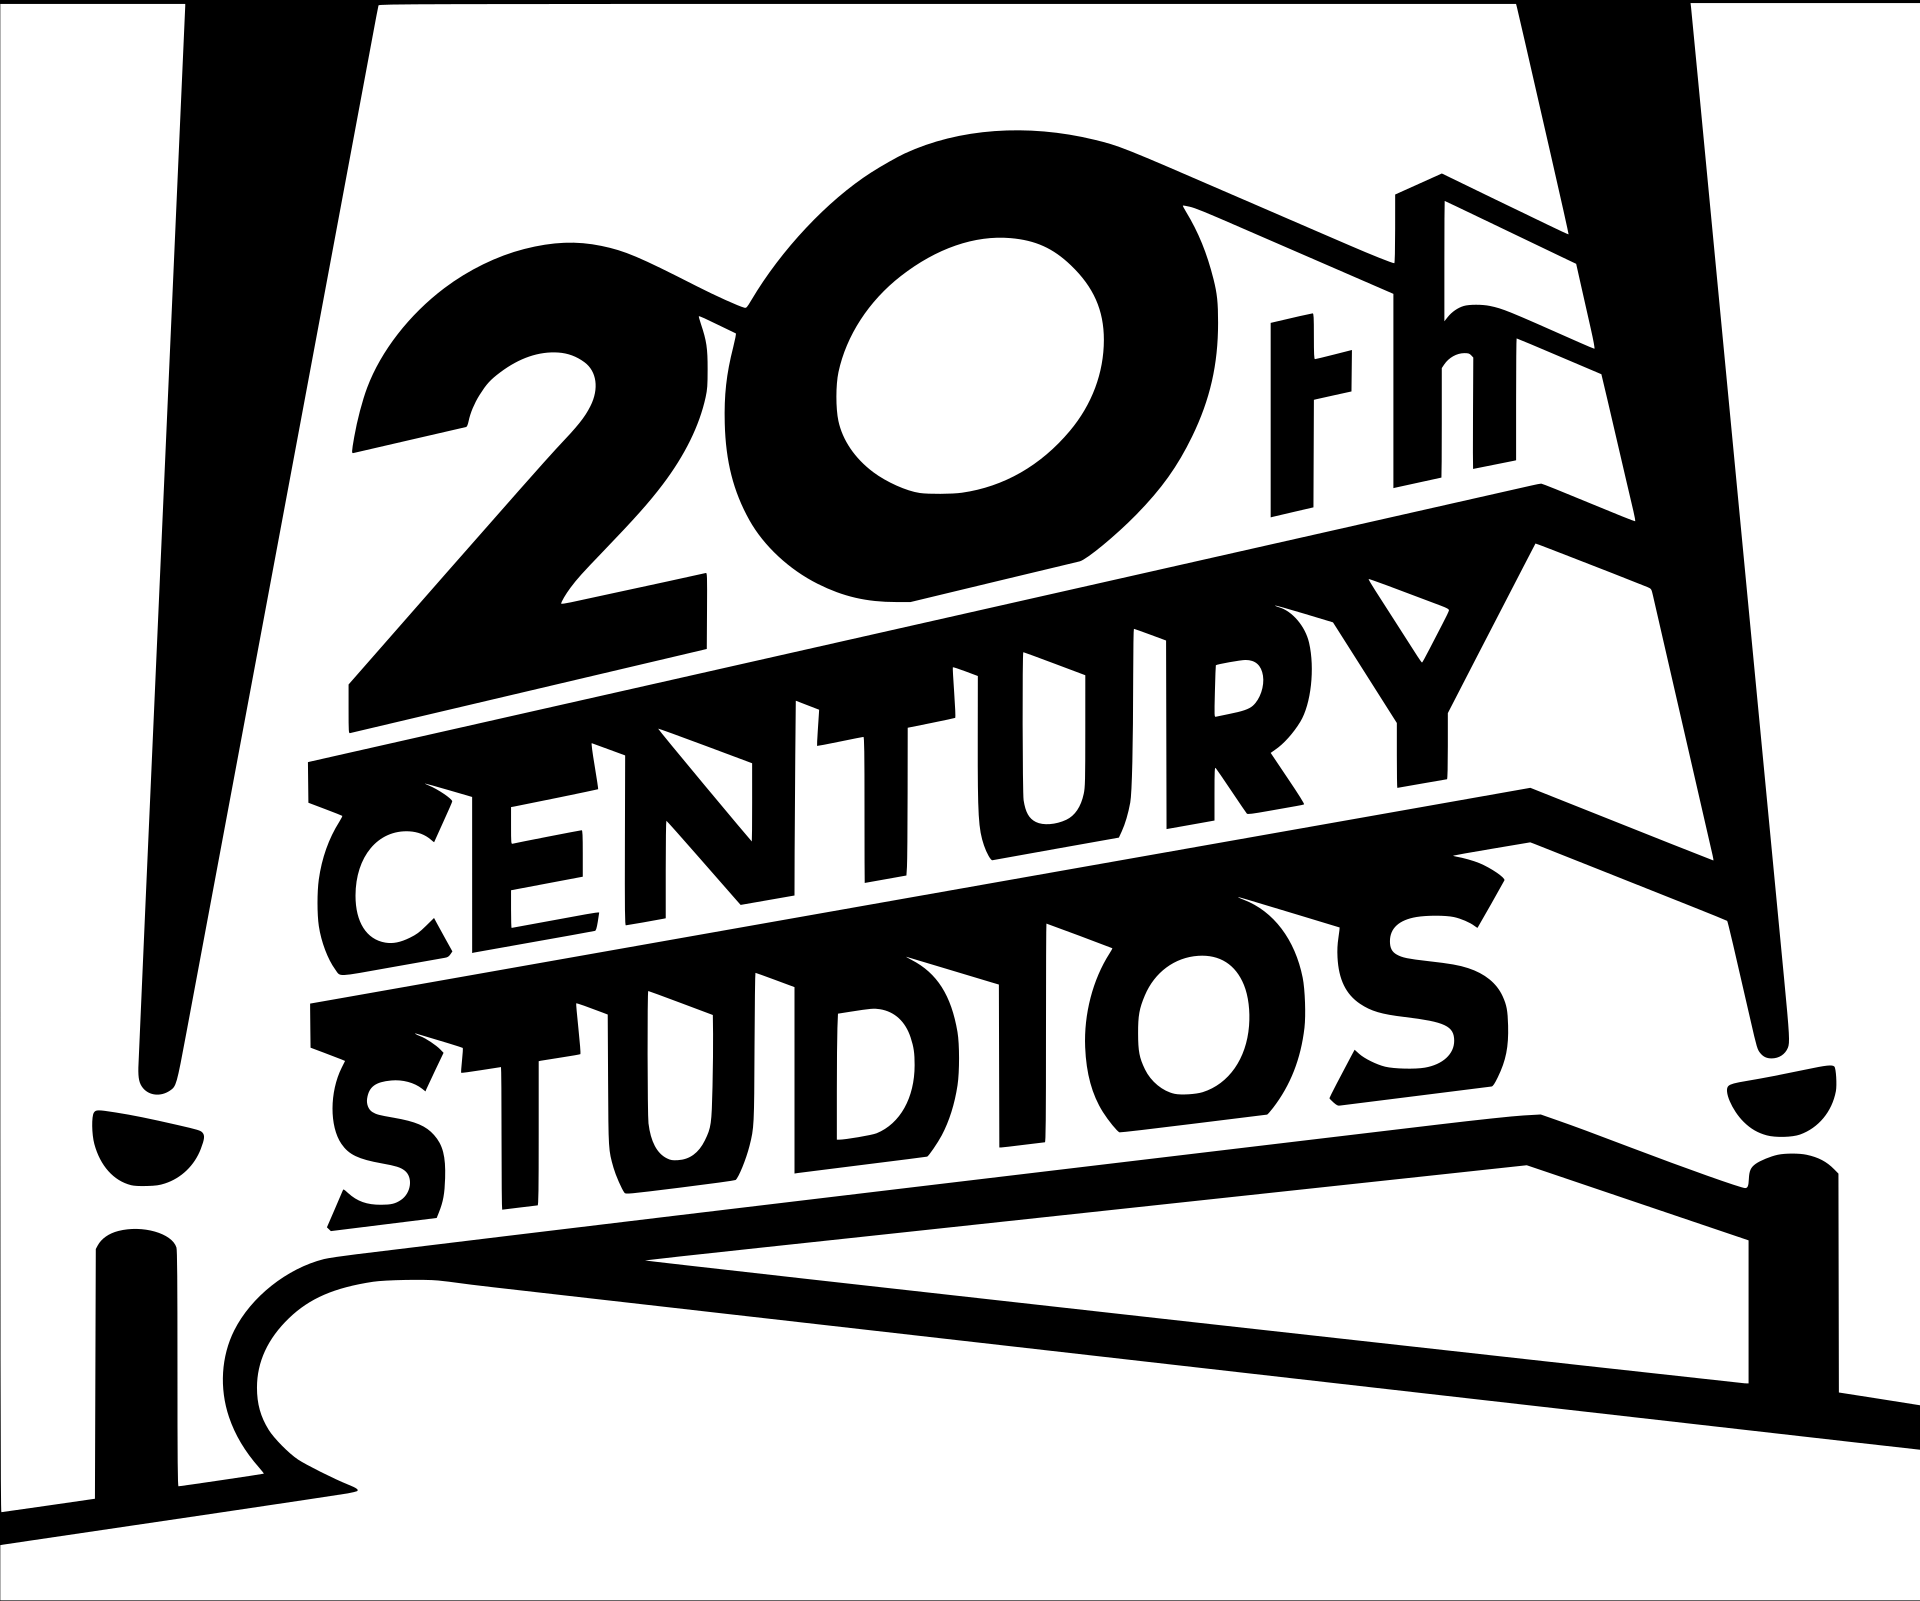 File:20th Century Studios (2021).svg - Wikipedia